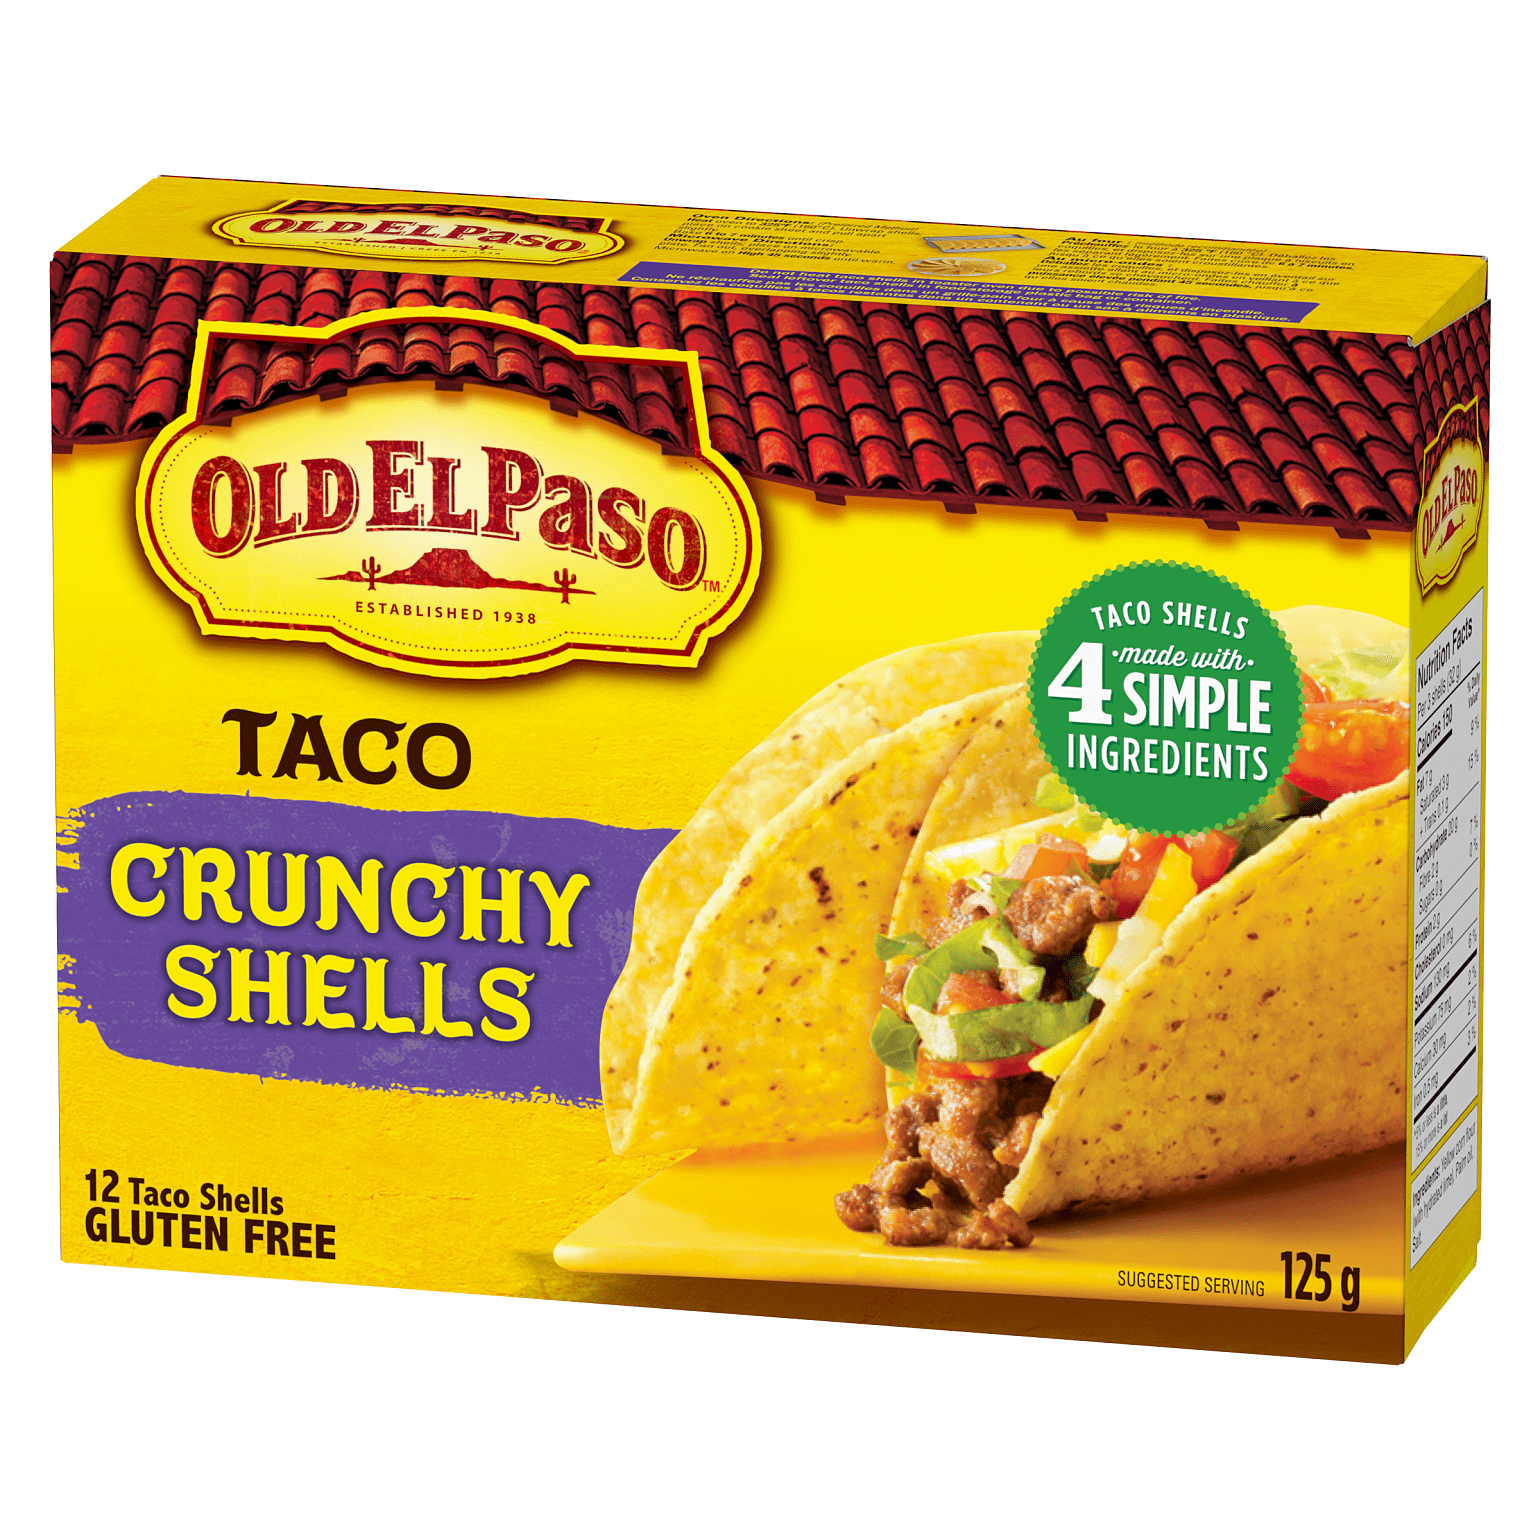 Taco Crunchy Shells